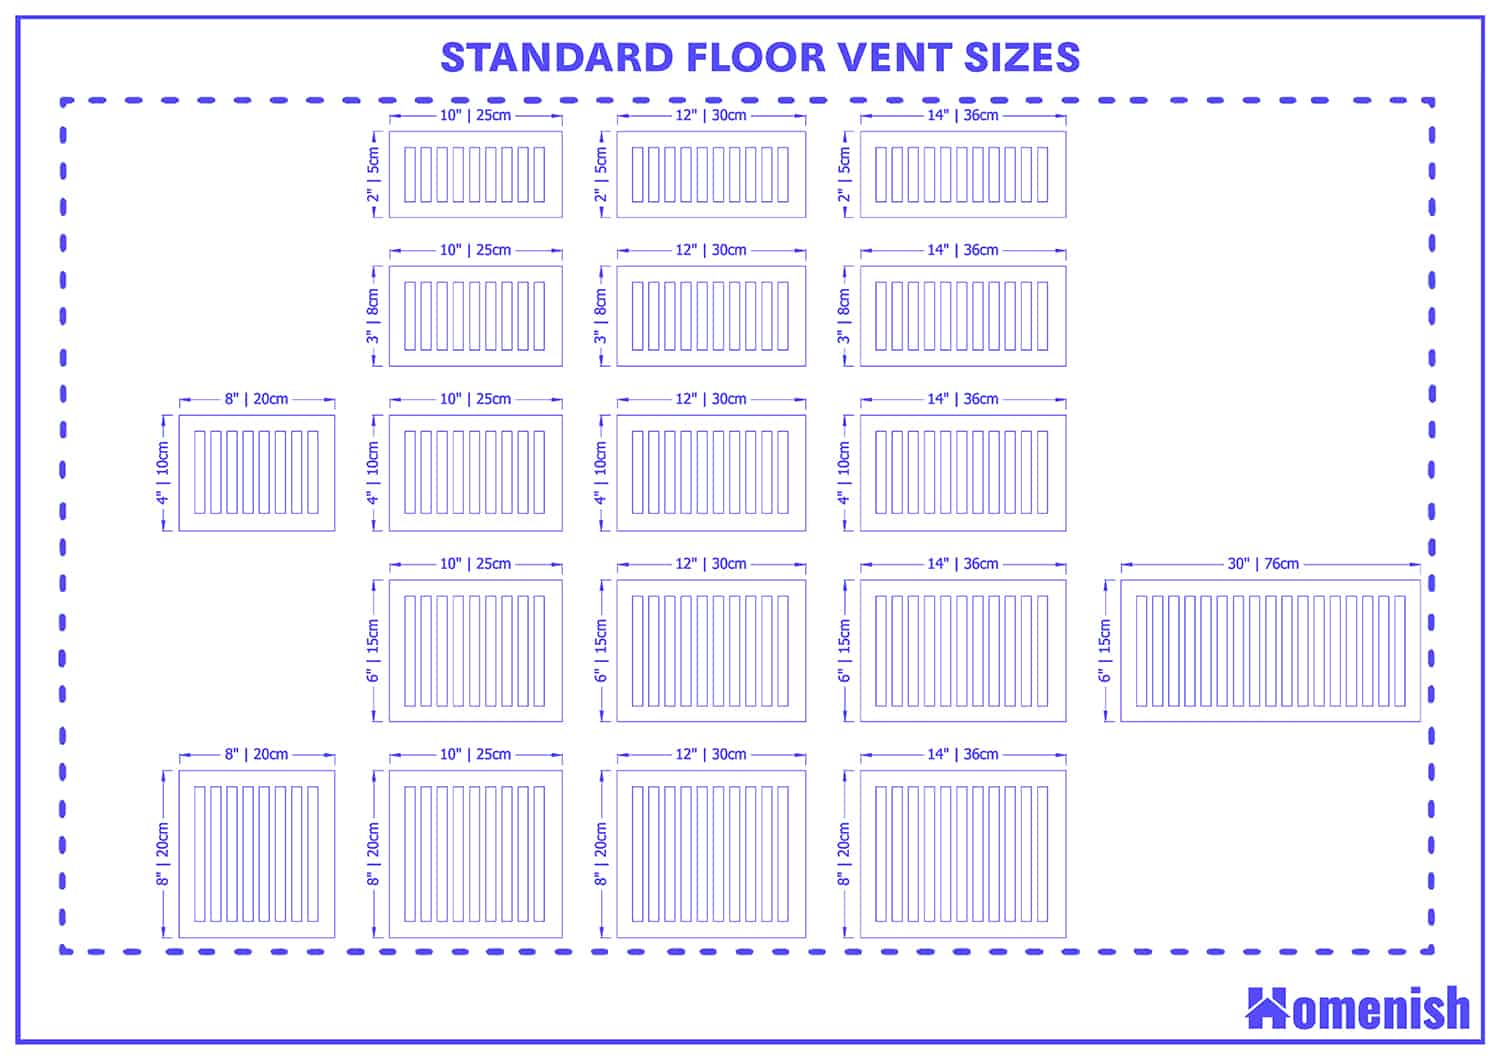 Standard Floor Vent Sizes